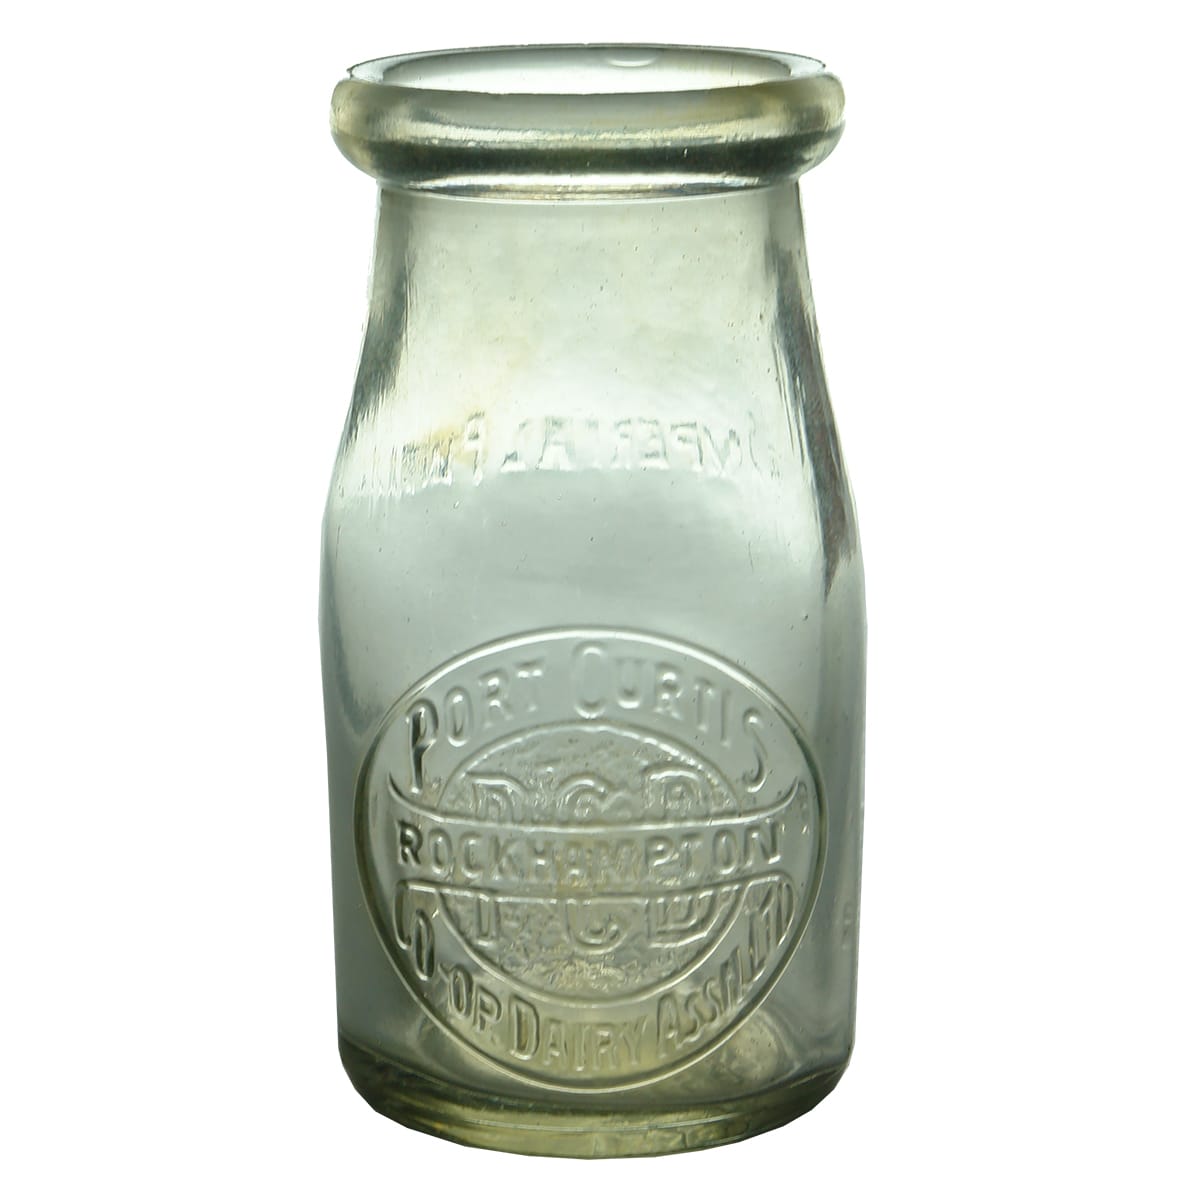 Milk. Port Curtis Co-Op. Dairy Assn. Ltd, Rockhampton. Wad lip. 1/4 Pint.